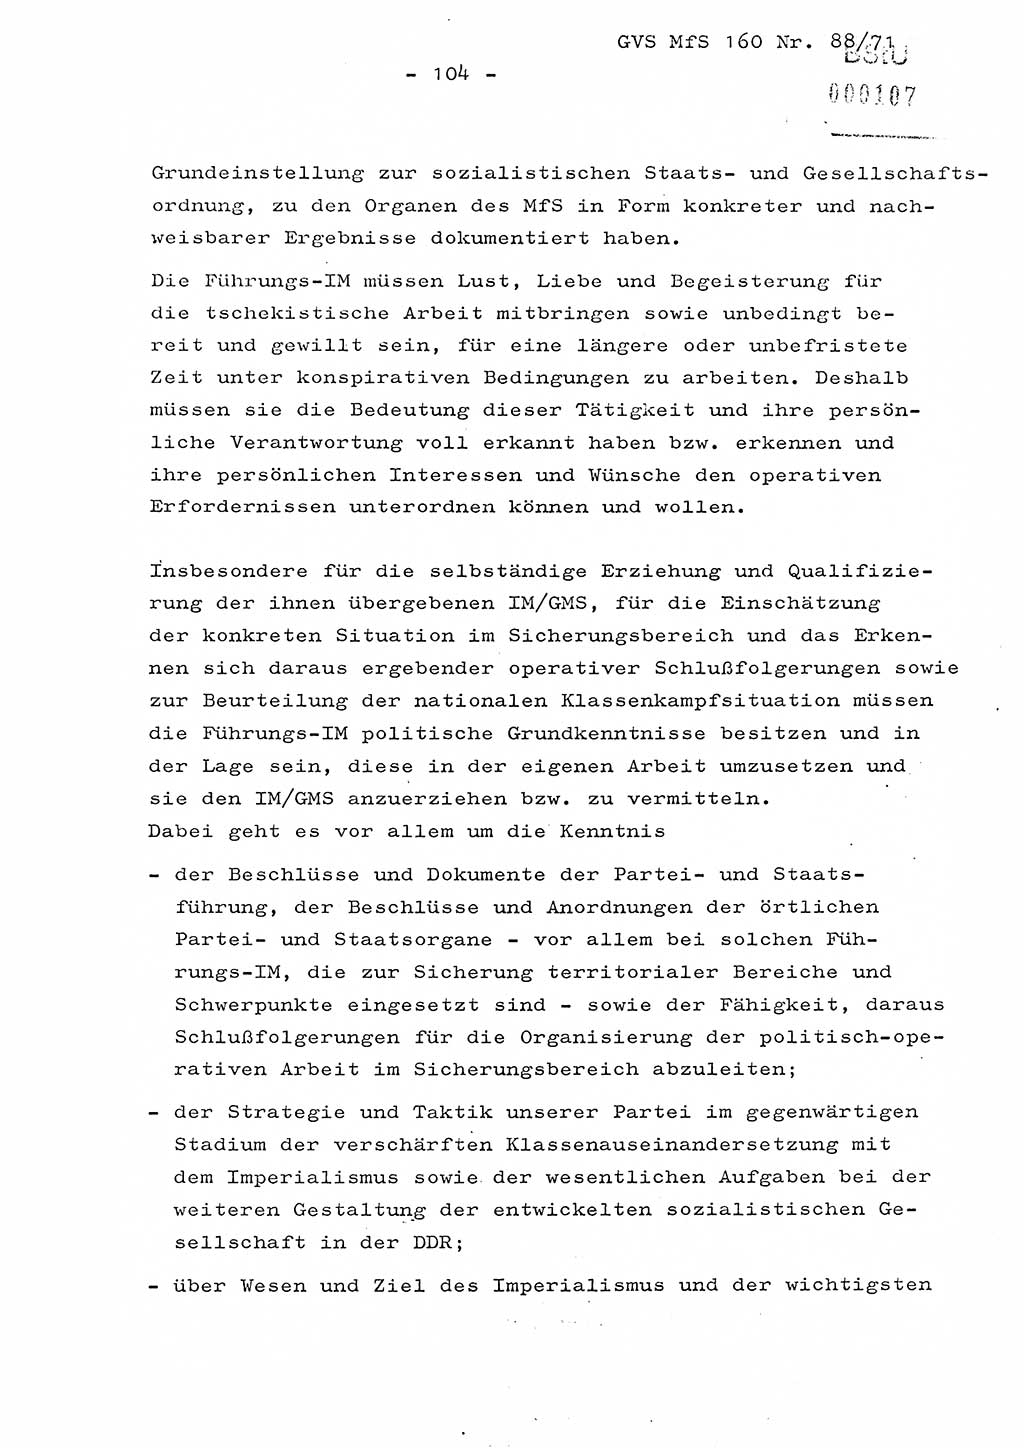 Dissertation Oberstleutnant Josef Schwarz (BV Schwerin), Major Fritz Amm (JHS), Hauptmann Peter Gräßler (JHS), Ministerium für Staatssicherheit (MfS) [Deutsche Demokratische Republik (DDR)], Juristische Hochschule (JHS), Geheime Verschlußsache (GVS) 160-88/71, Potsdam 1972, Seite 104 (Diss. MfS DDR JHS GVS 160-88/71 1972, S. 104)